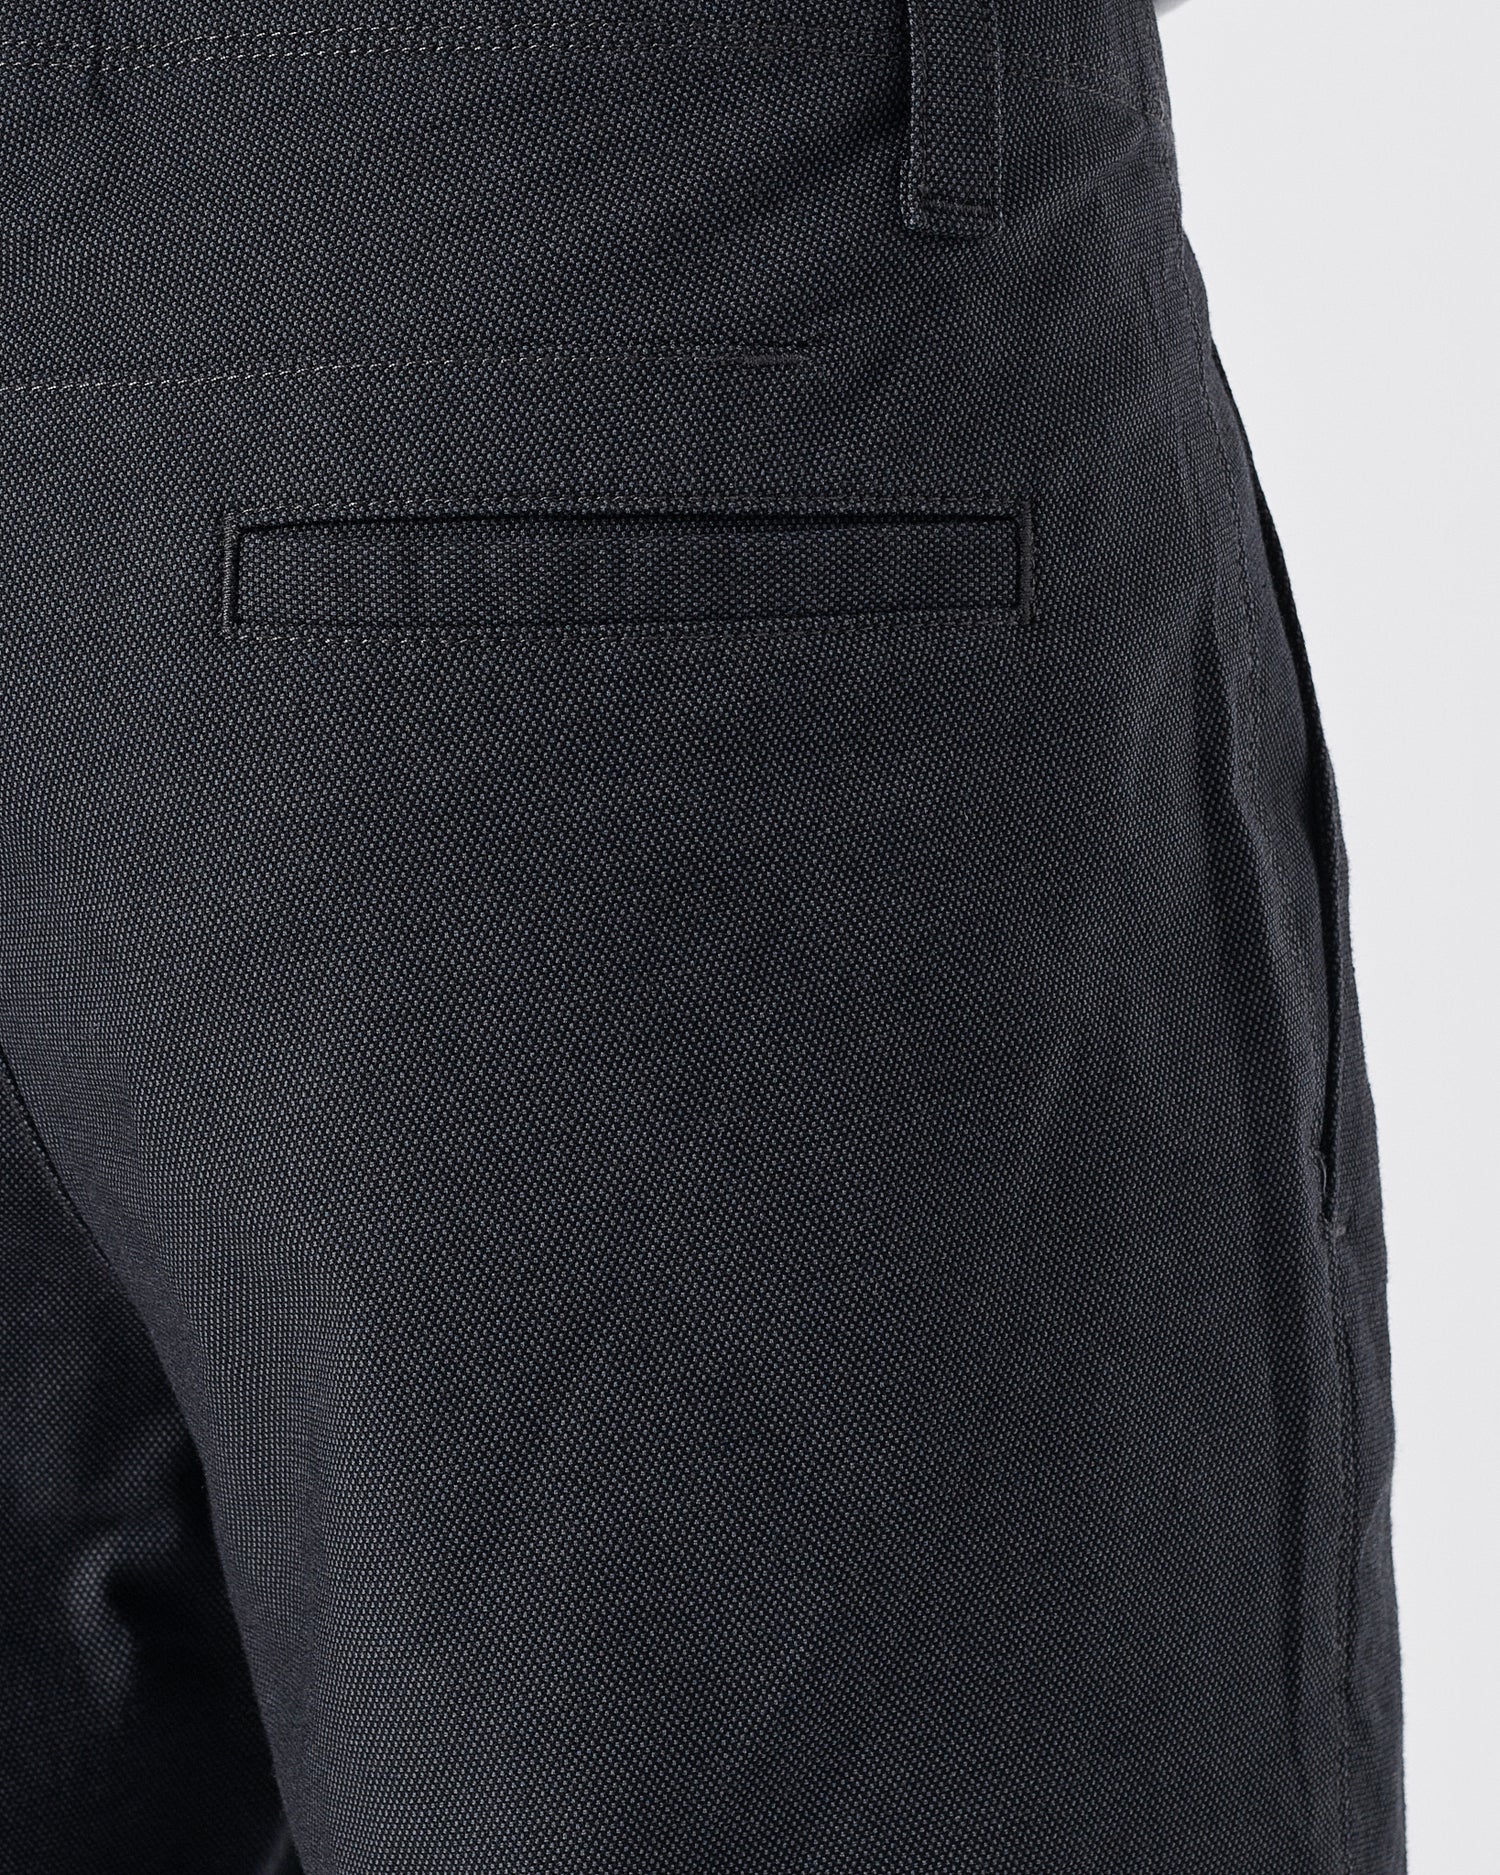 UA Dots Over Printed Men Black Short Pants 18.50